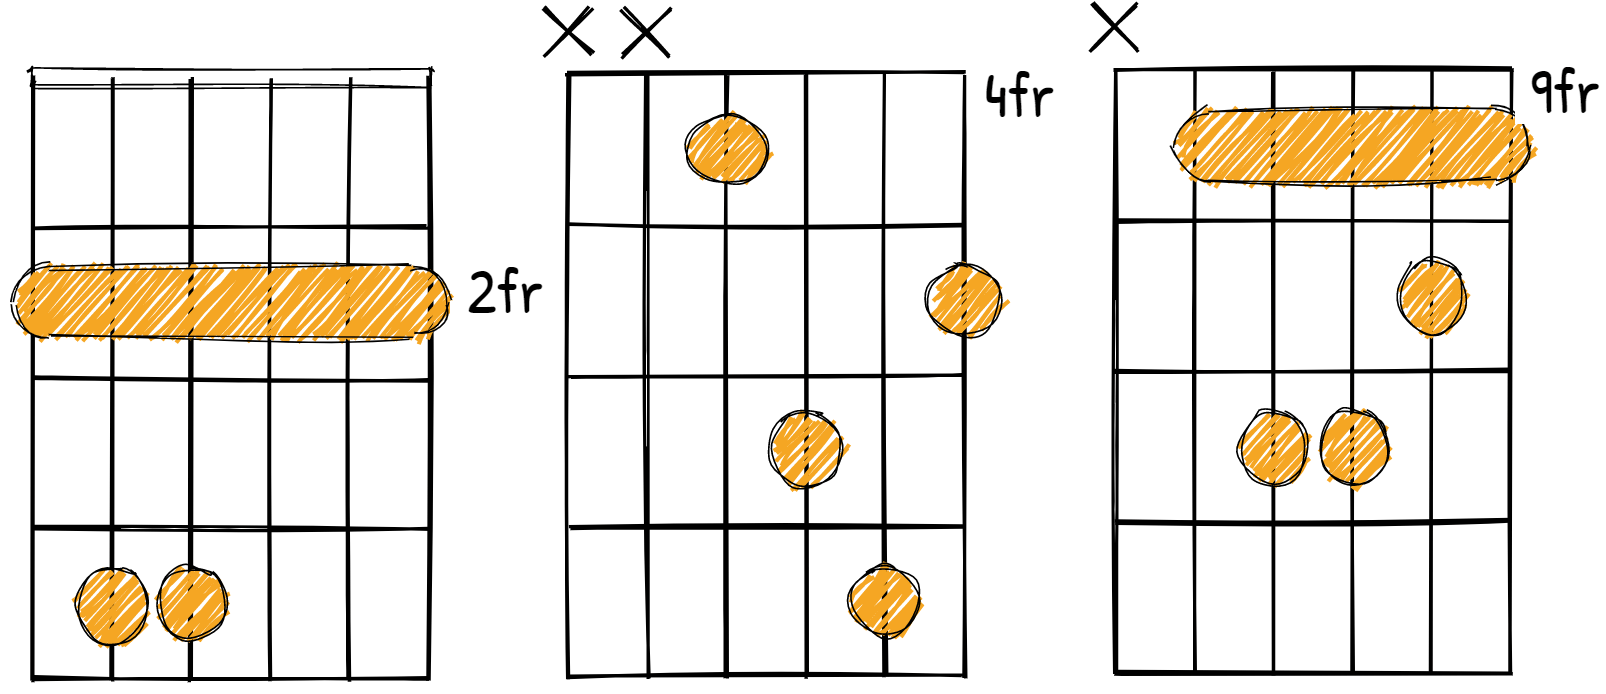 F sharp minor chord diagrams